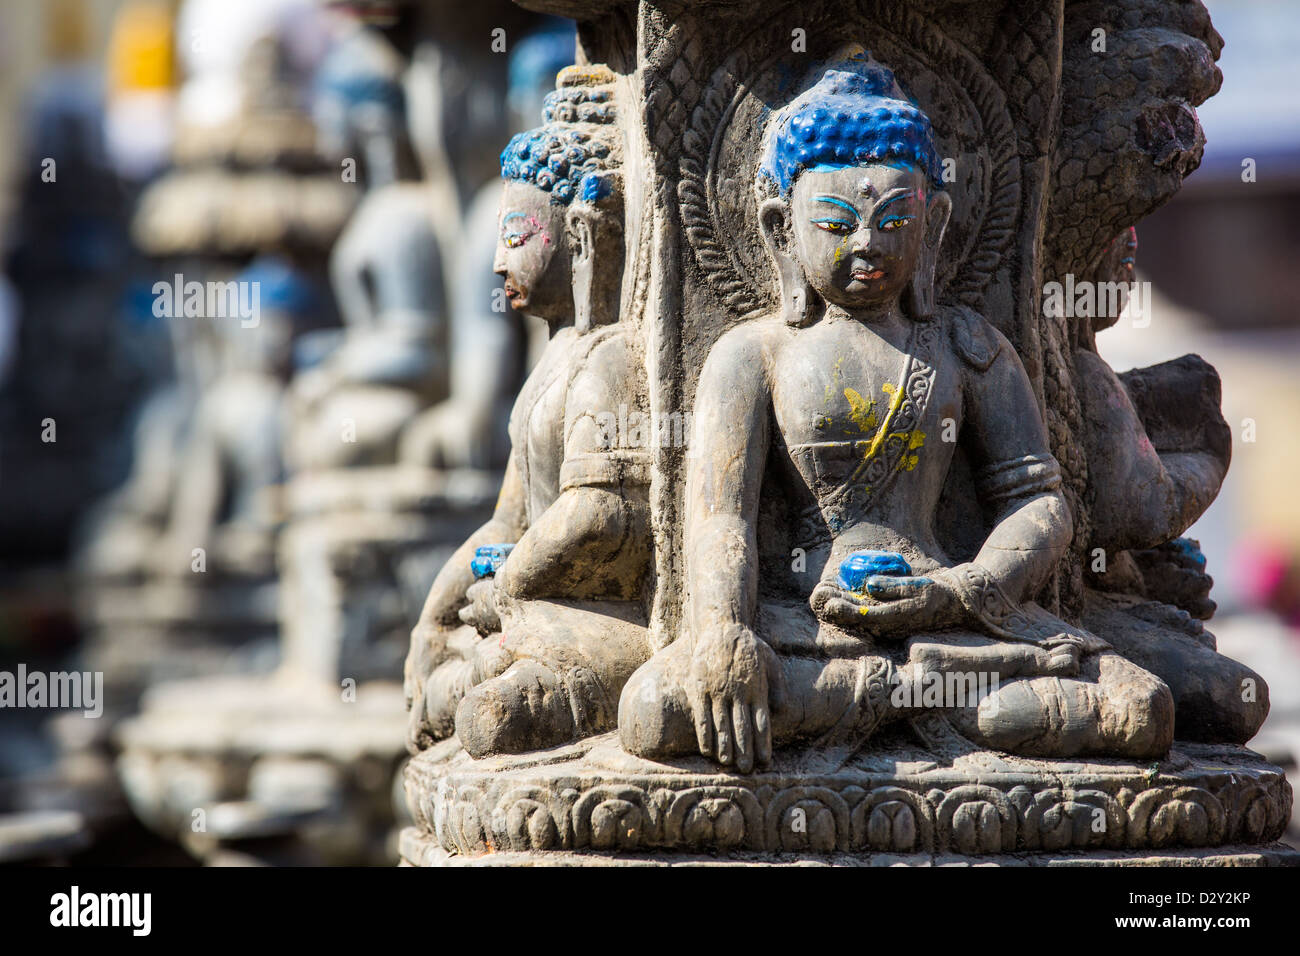 Small Buddha sculptures at Shree Gha Buddhist Stupa, Thamel, Kathmandu, Nepal Stock Photo